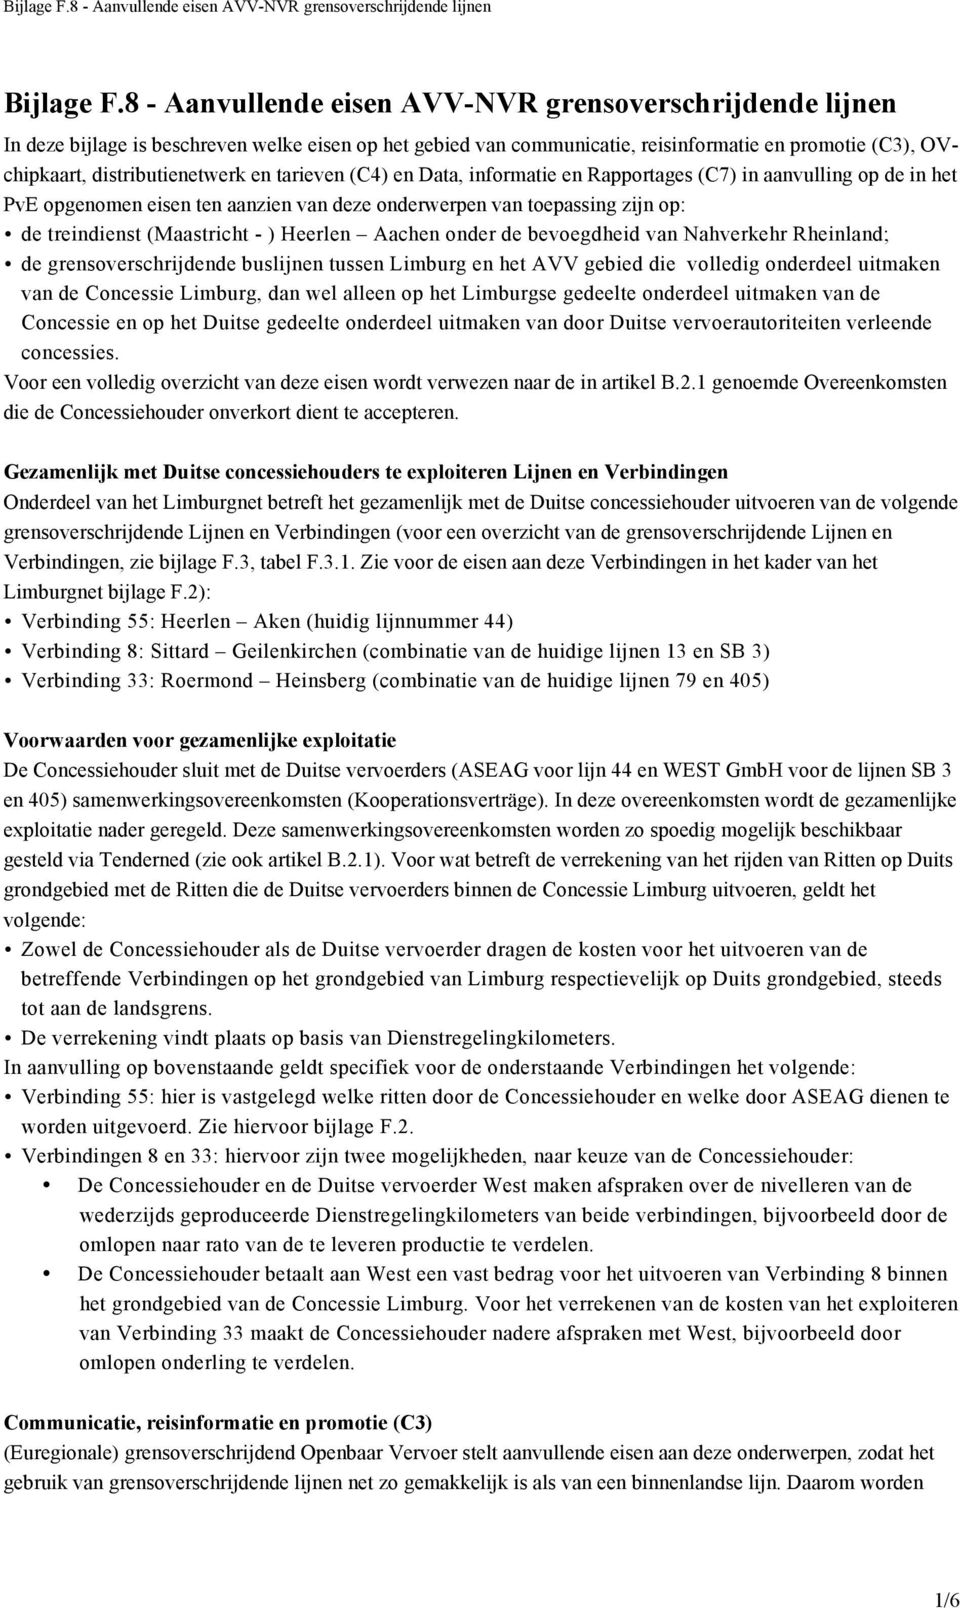 tarieven (C4) en Data, informatie en Rapportages (C7) in aanvulling op de in het PvE opgenomen eisen ten aanzien van deze onderwerpen van toepassing zijn op: de treindienst (Maastricht - ) Heerlen